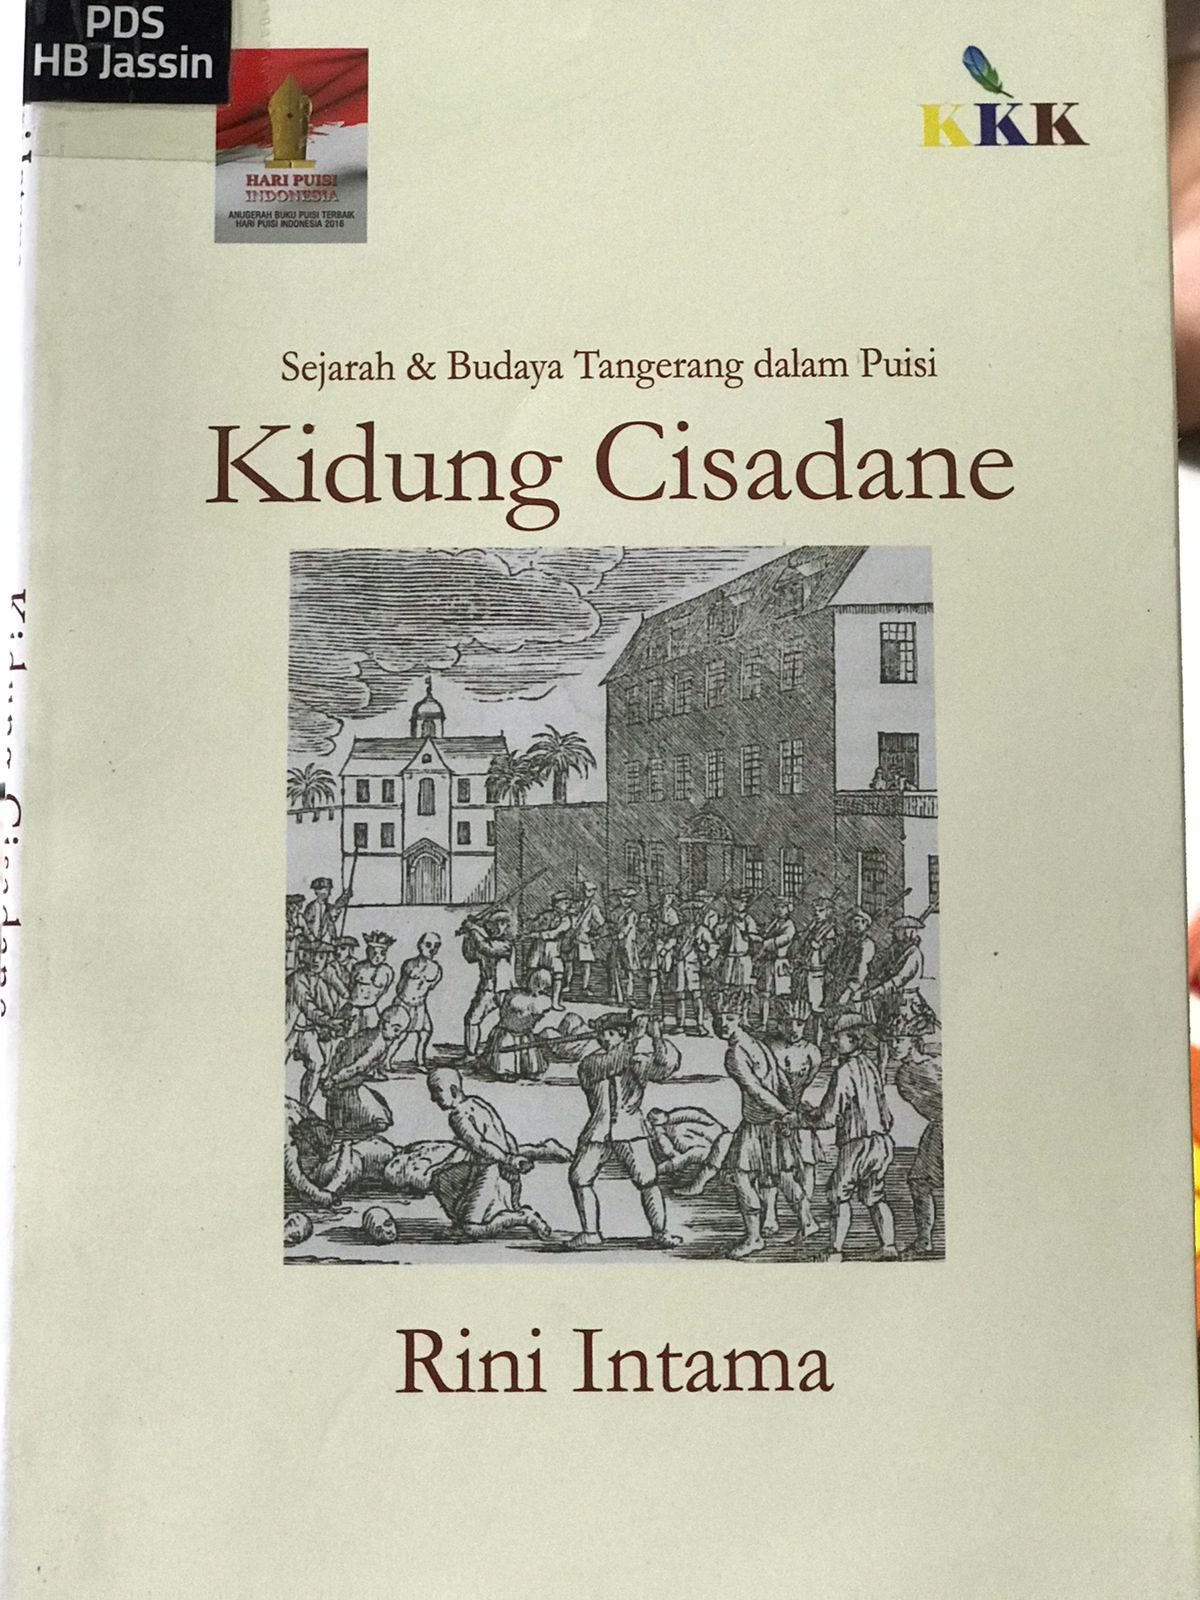 Kidung cisadane :  Sejarah & budaya Tangerang dalam puisi